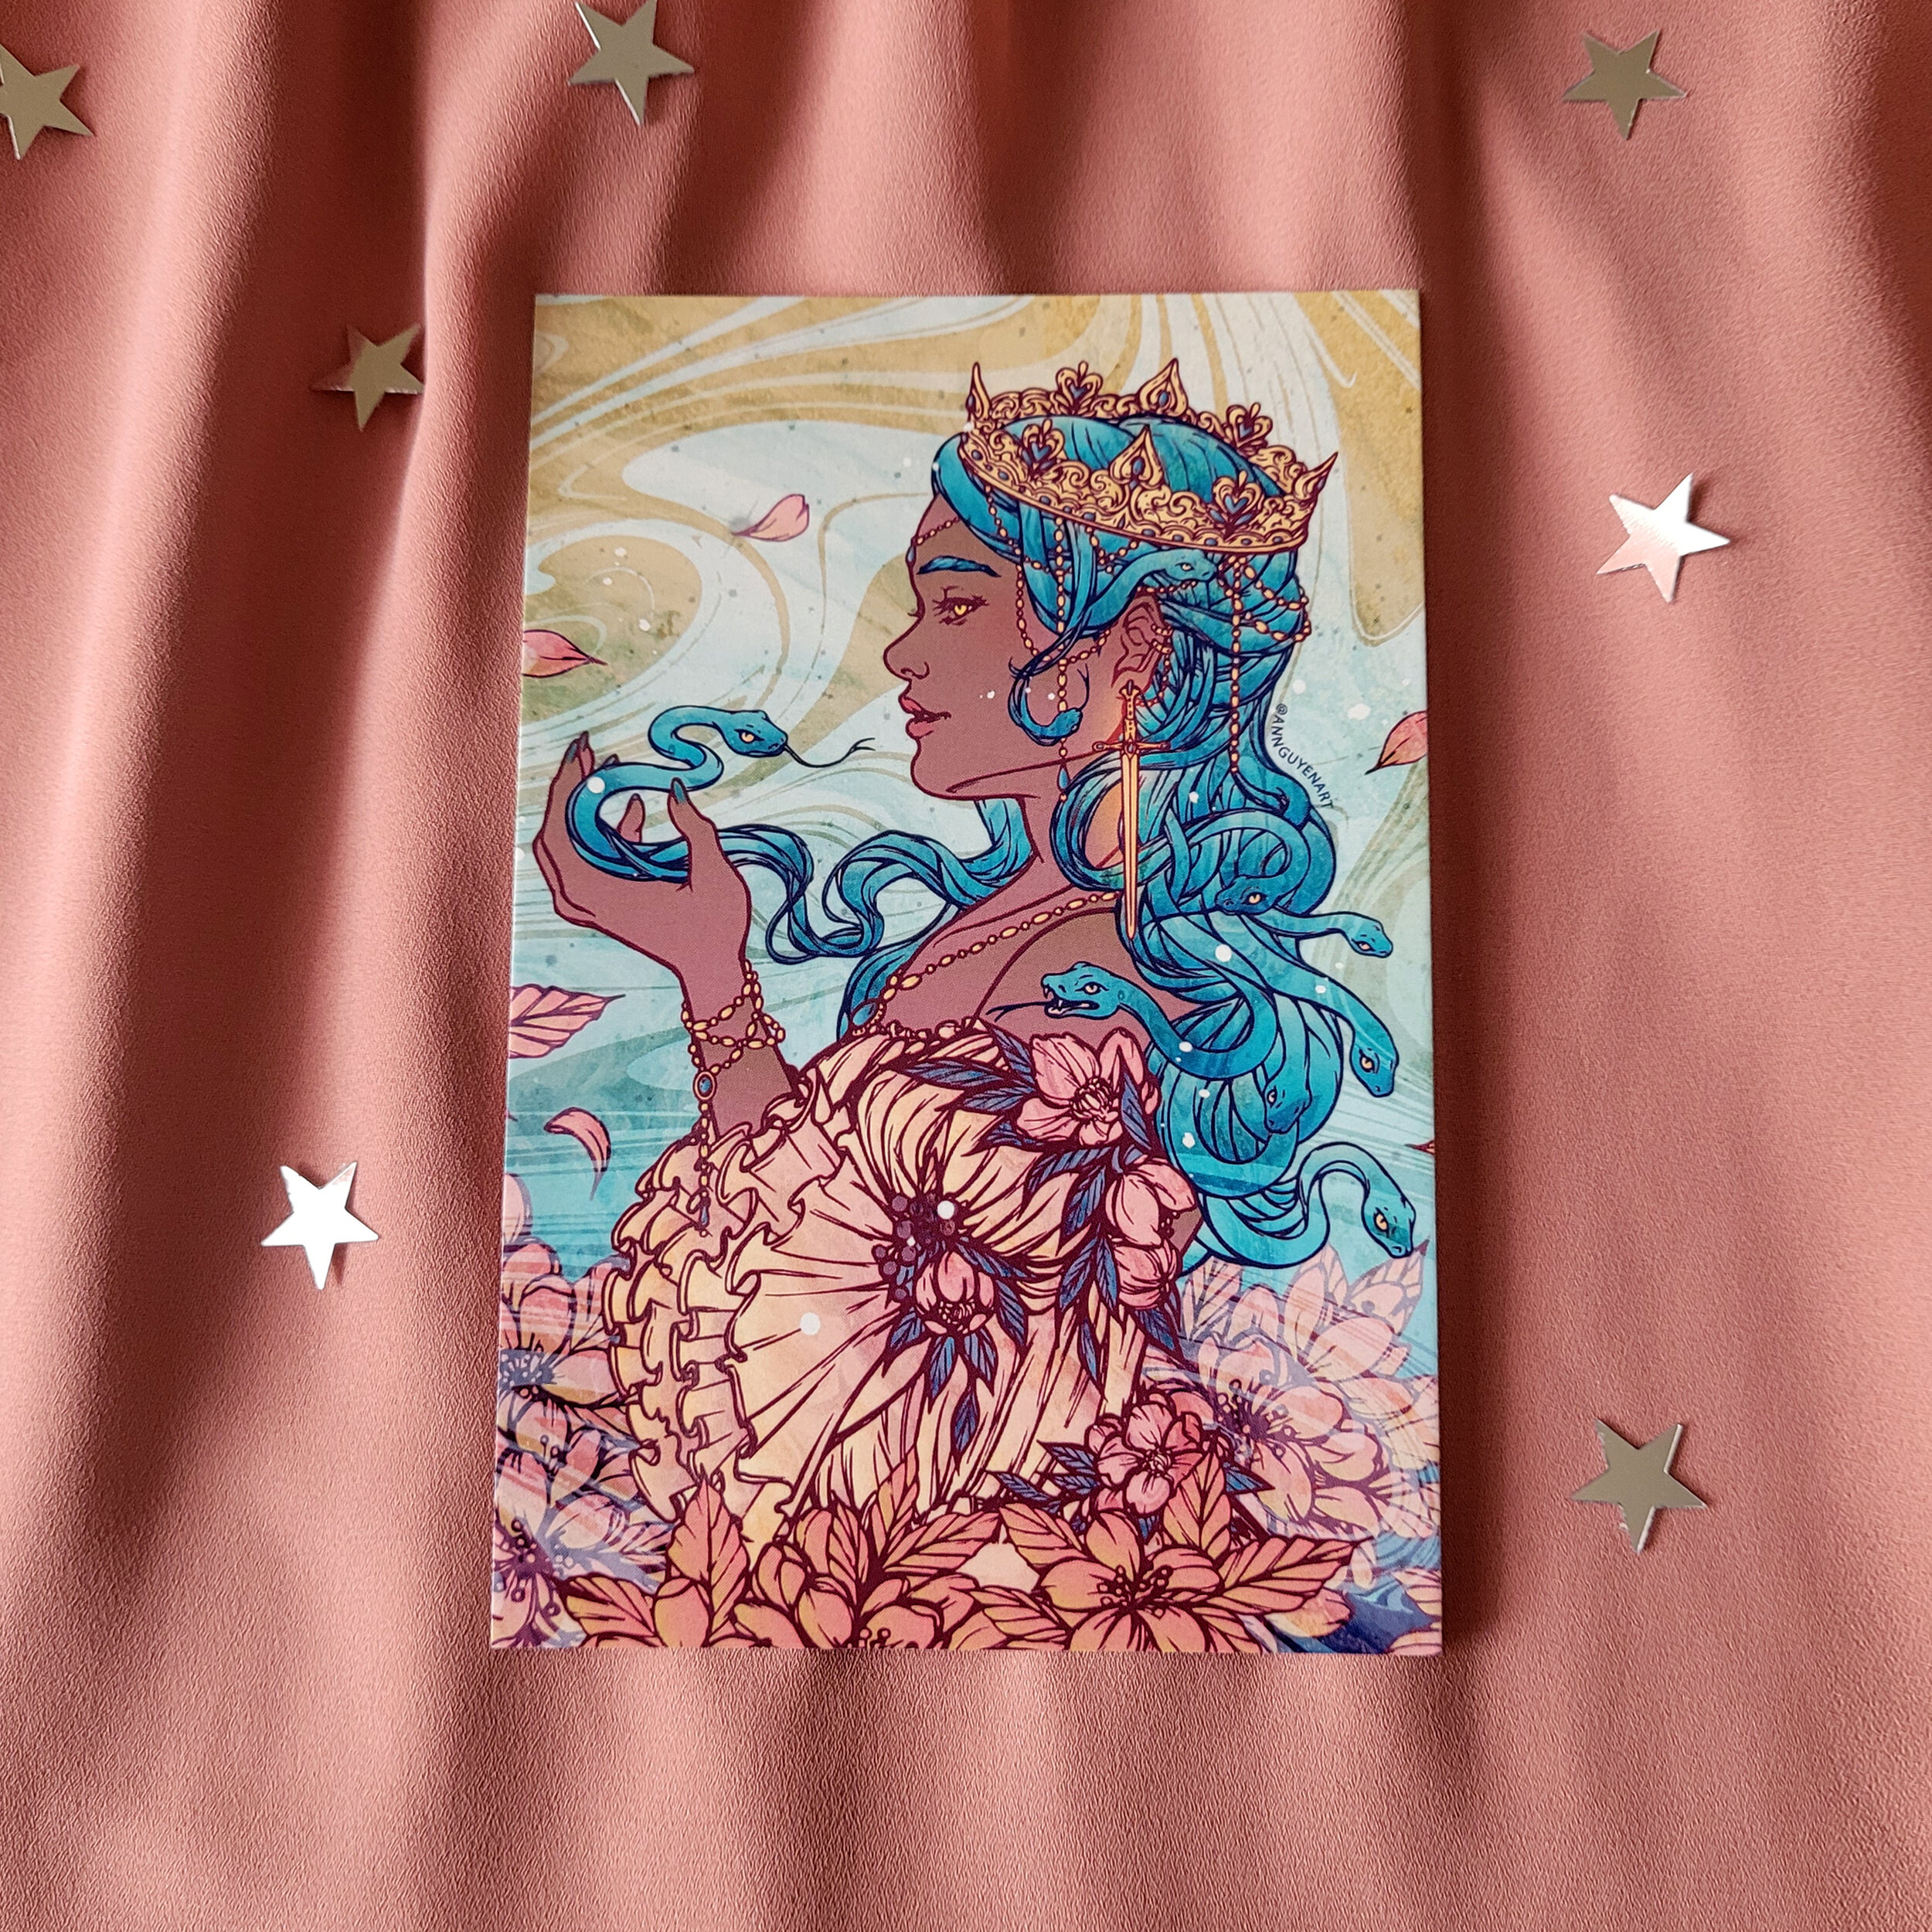 Queen-Medusa-postcard.jpg